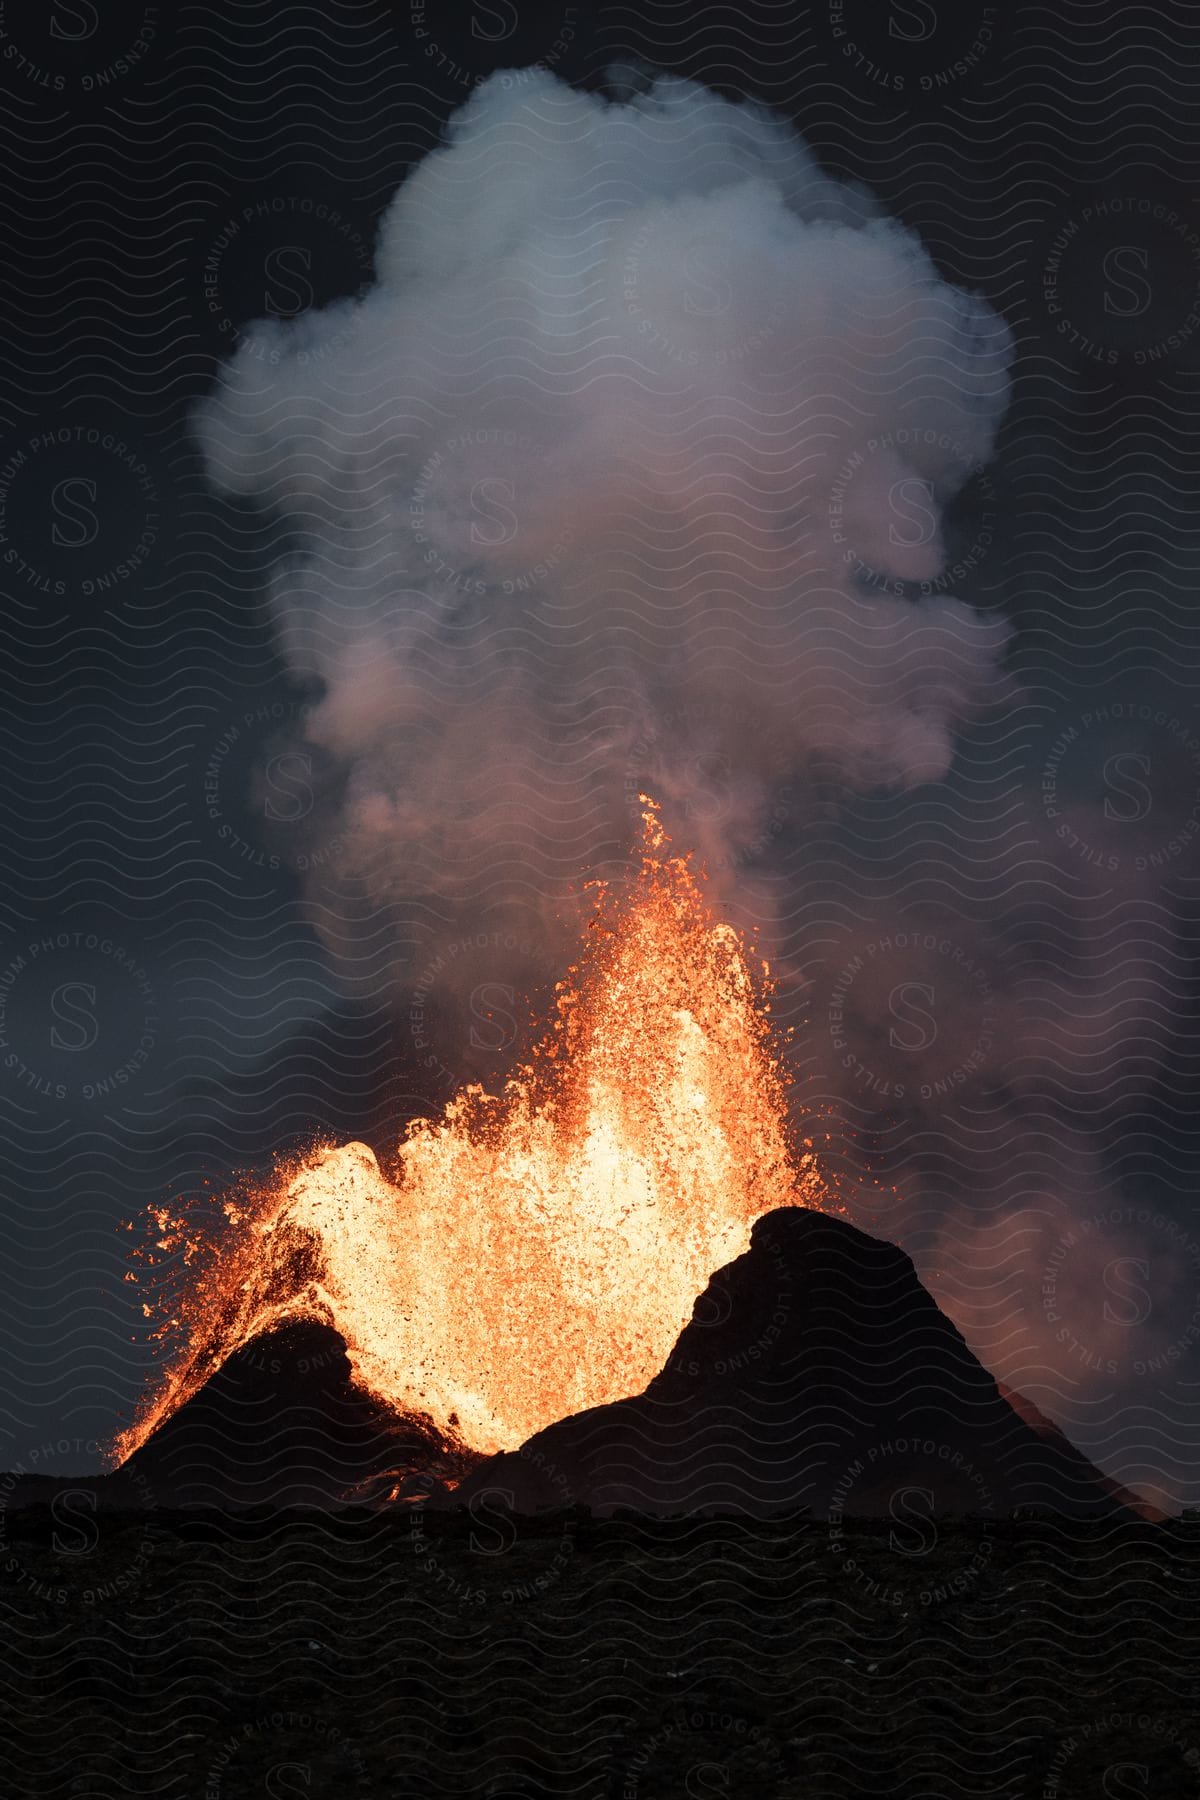 Erupting volcano emitting heavy smoke at night